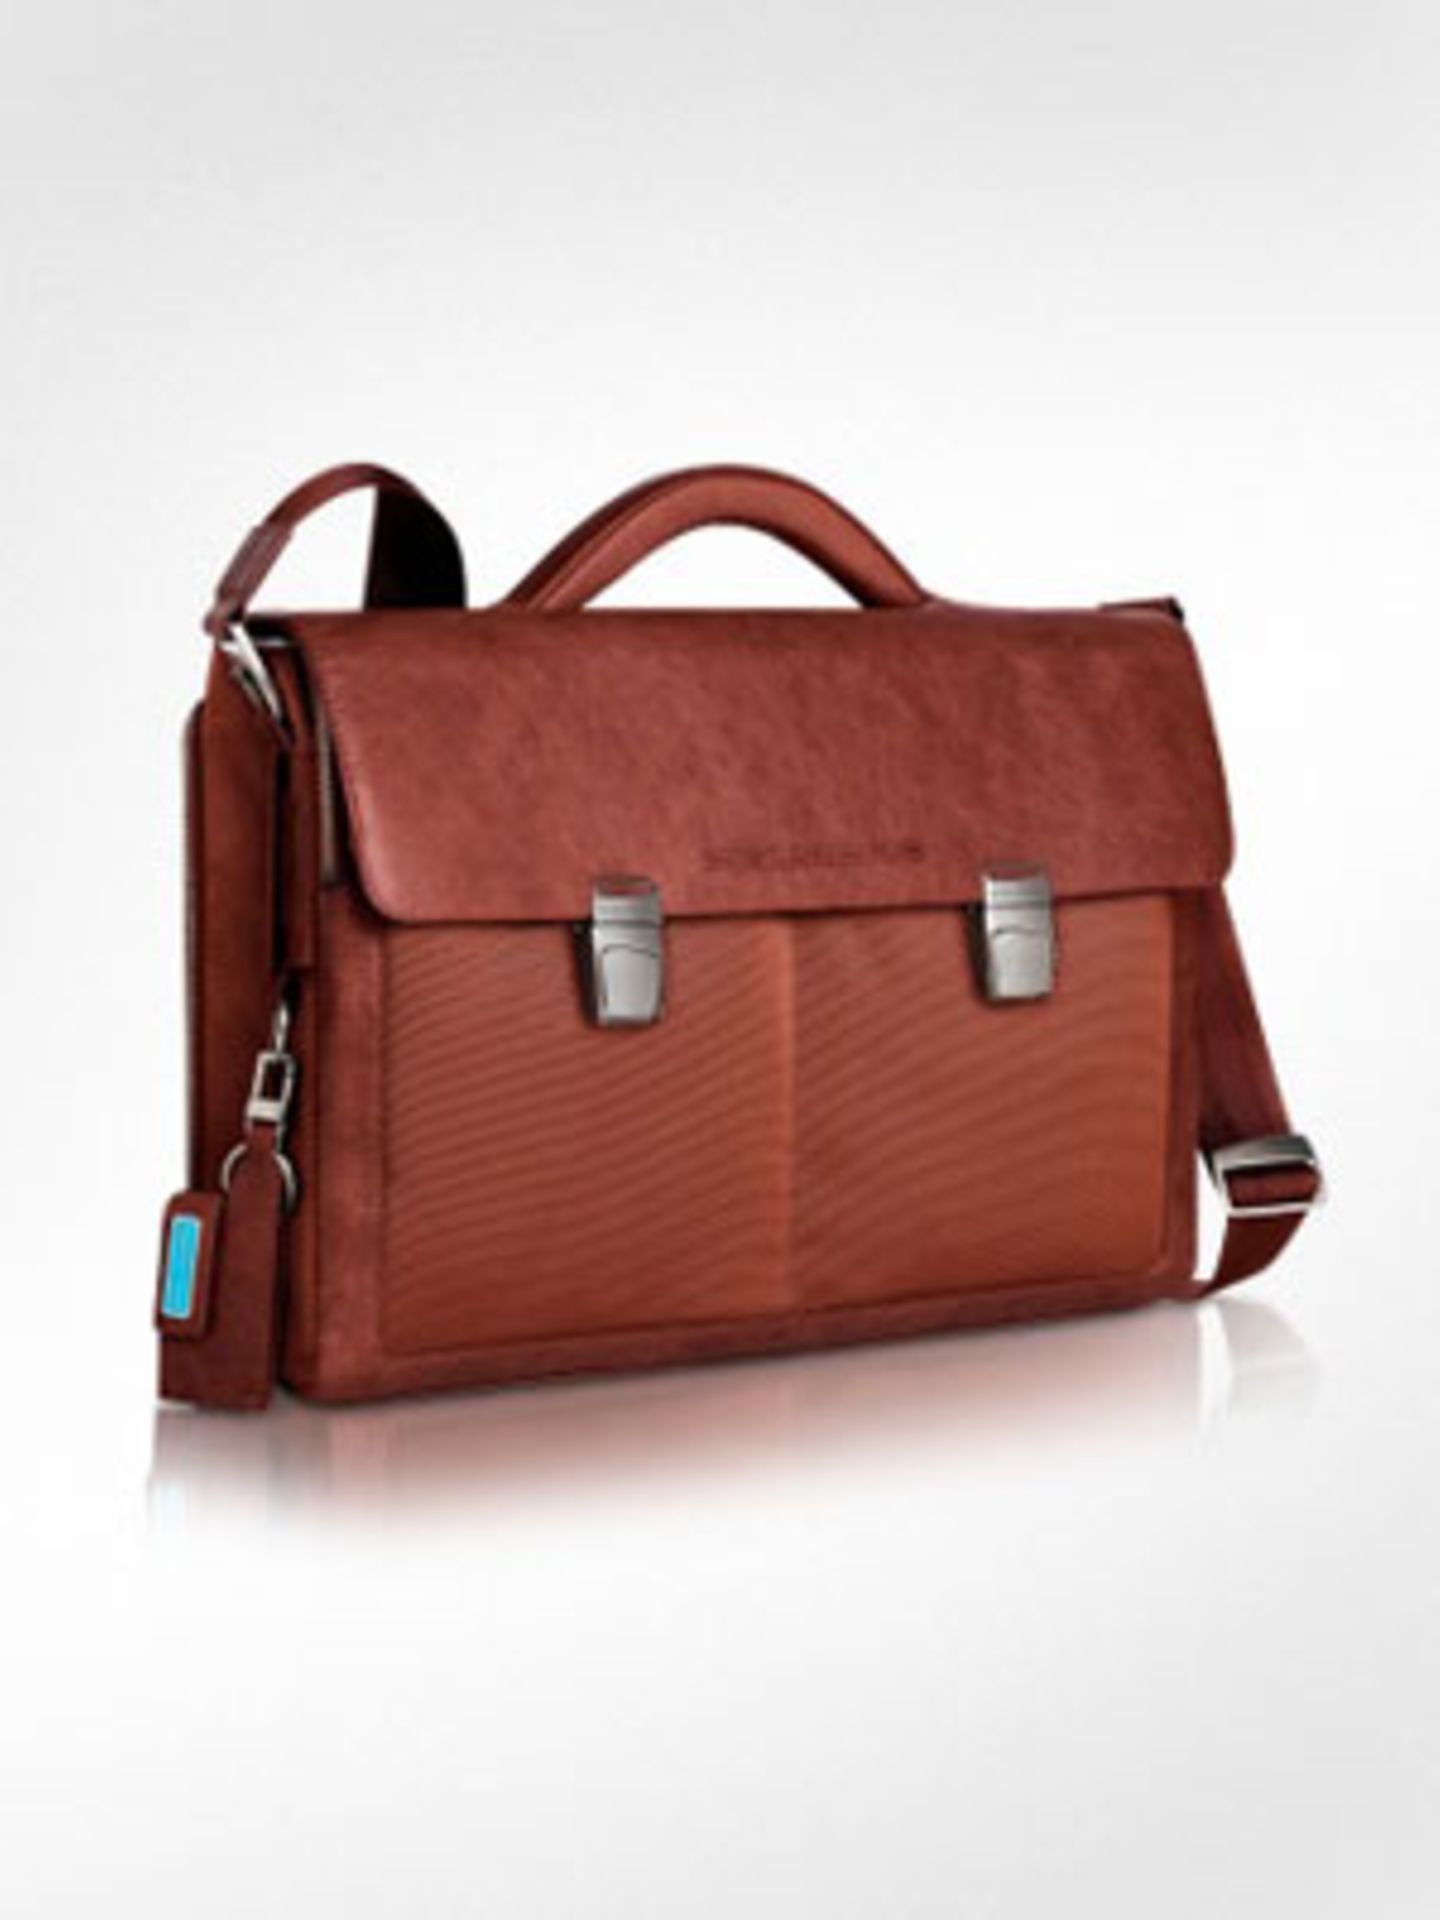 Laptoptasche im kultigen Schulranzen-Look aus hochwertigem Leder von Forzieri, um 330 Euro.